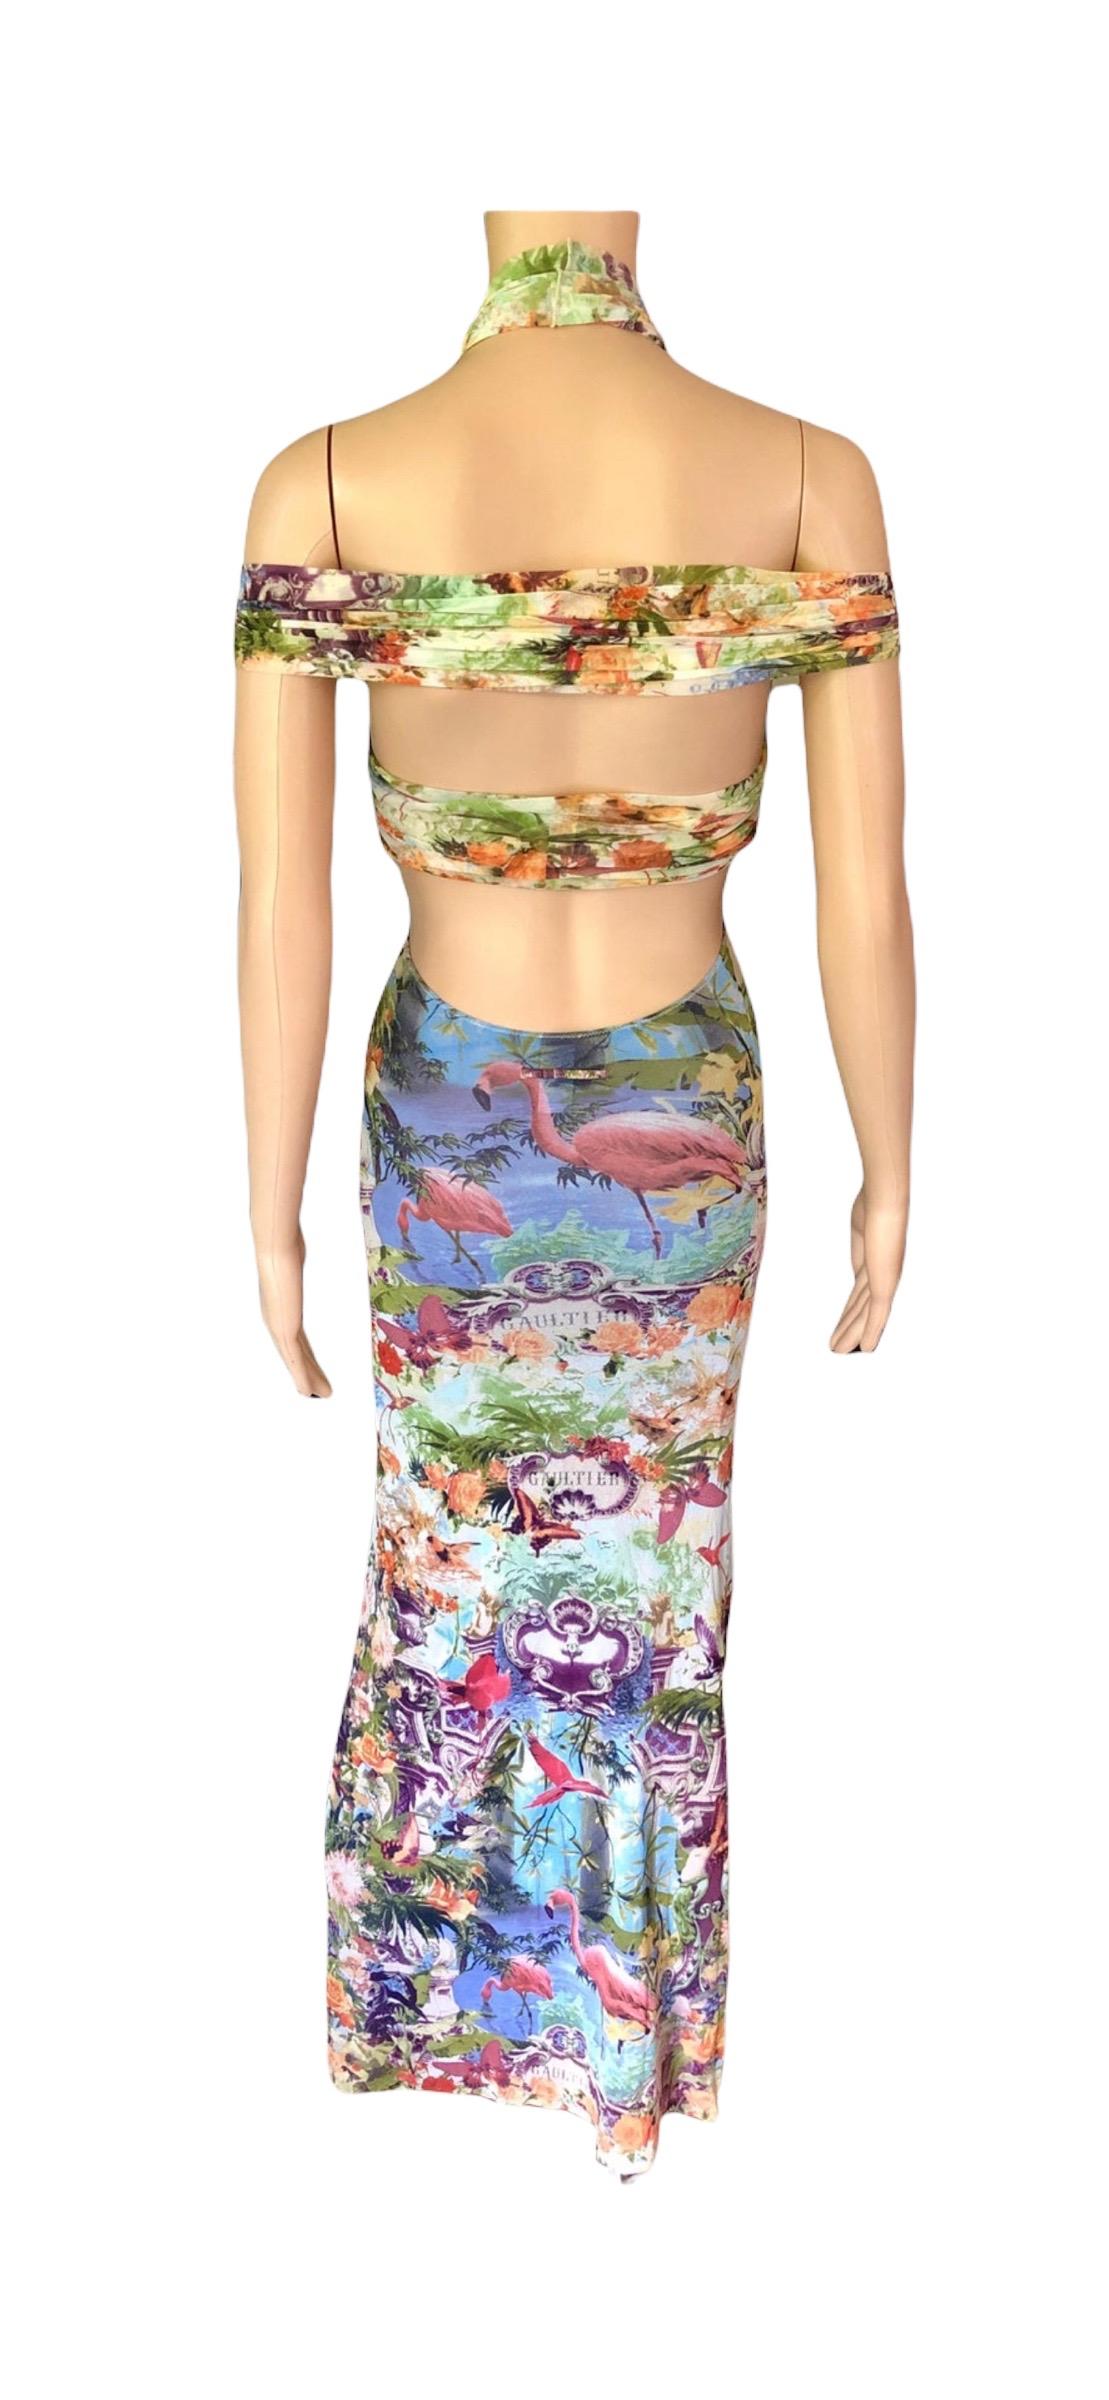 Jean Paul Gaultier Soleil S/S1999 Flamingo Tropical Print Cutout Mesh Maxi Dress For Sale 14